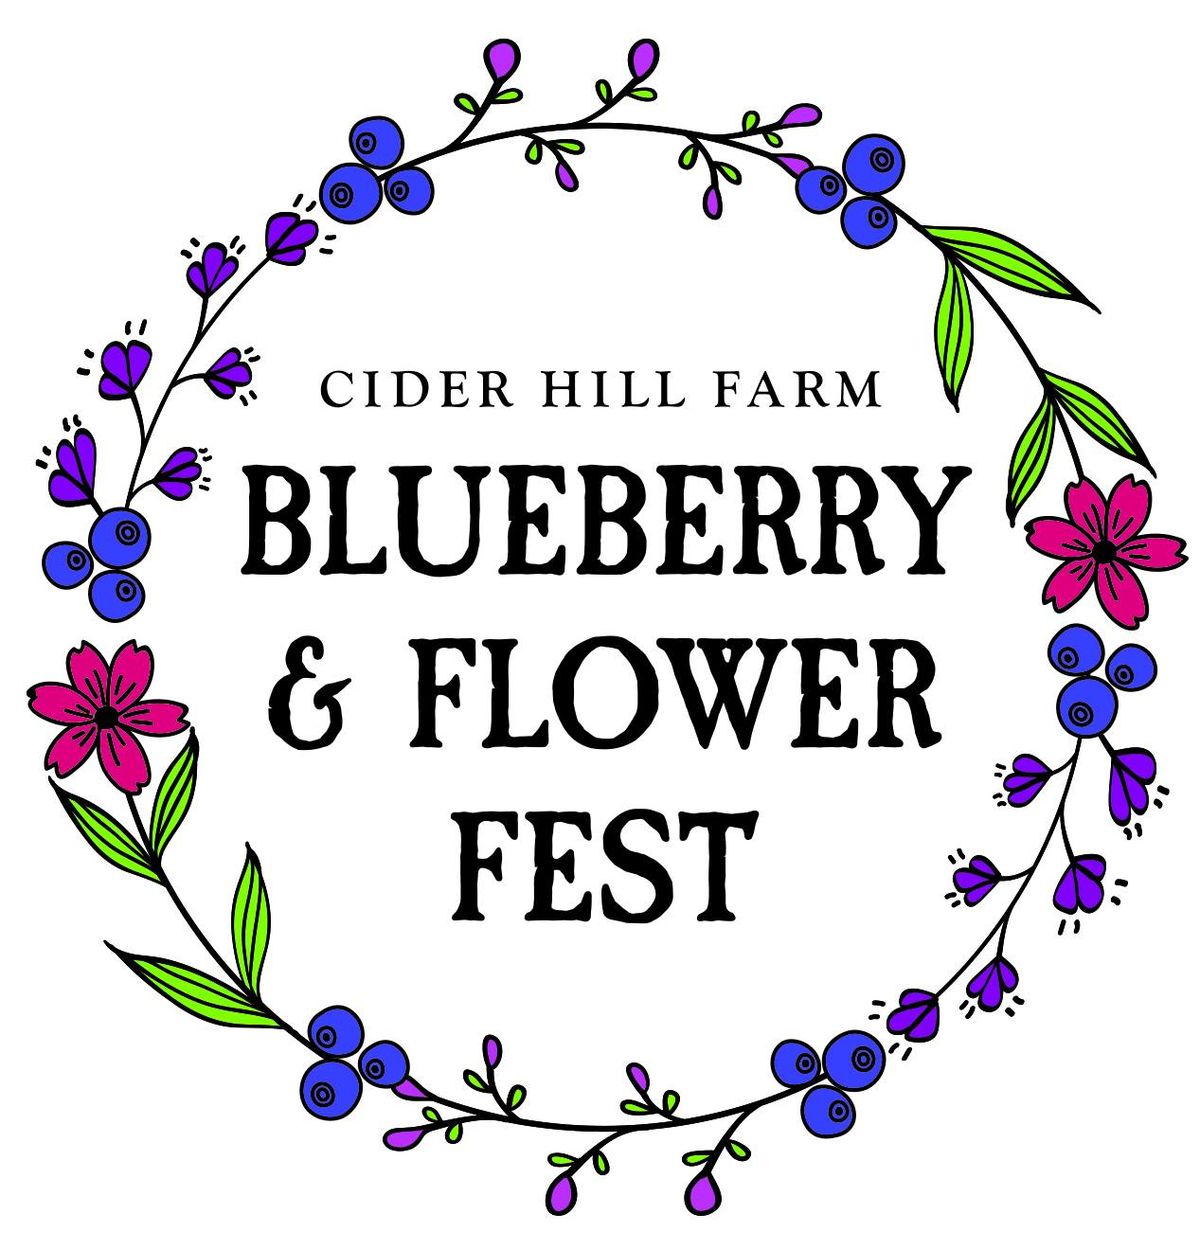 Blueberry & Flower Festival